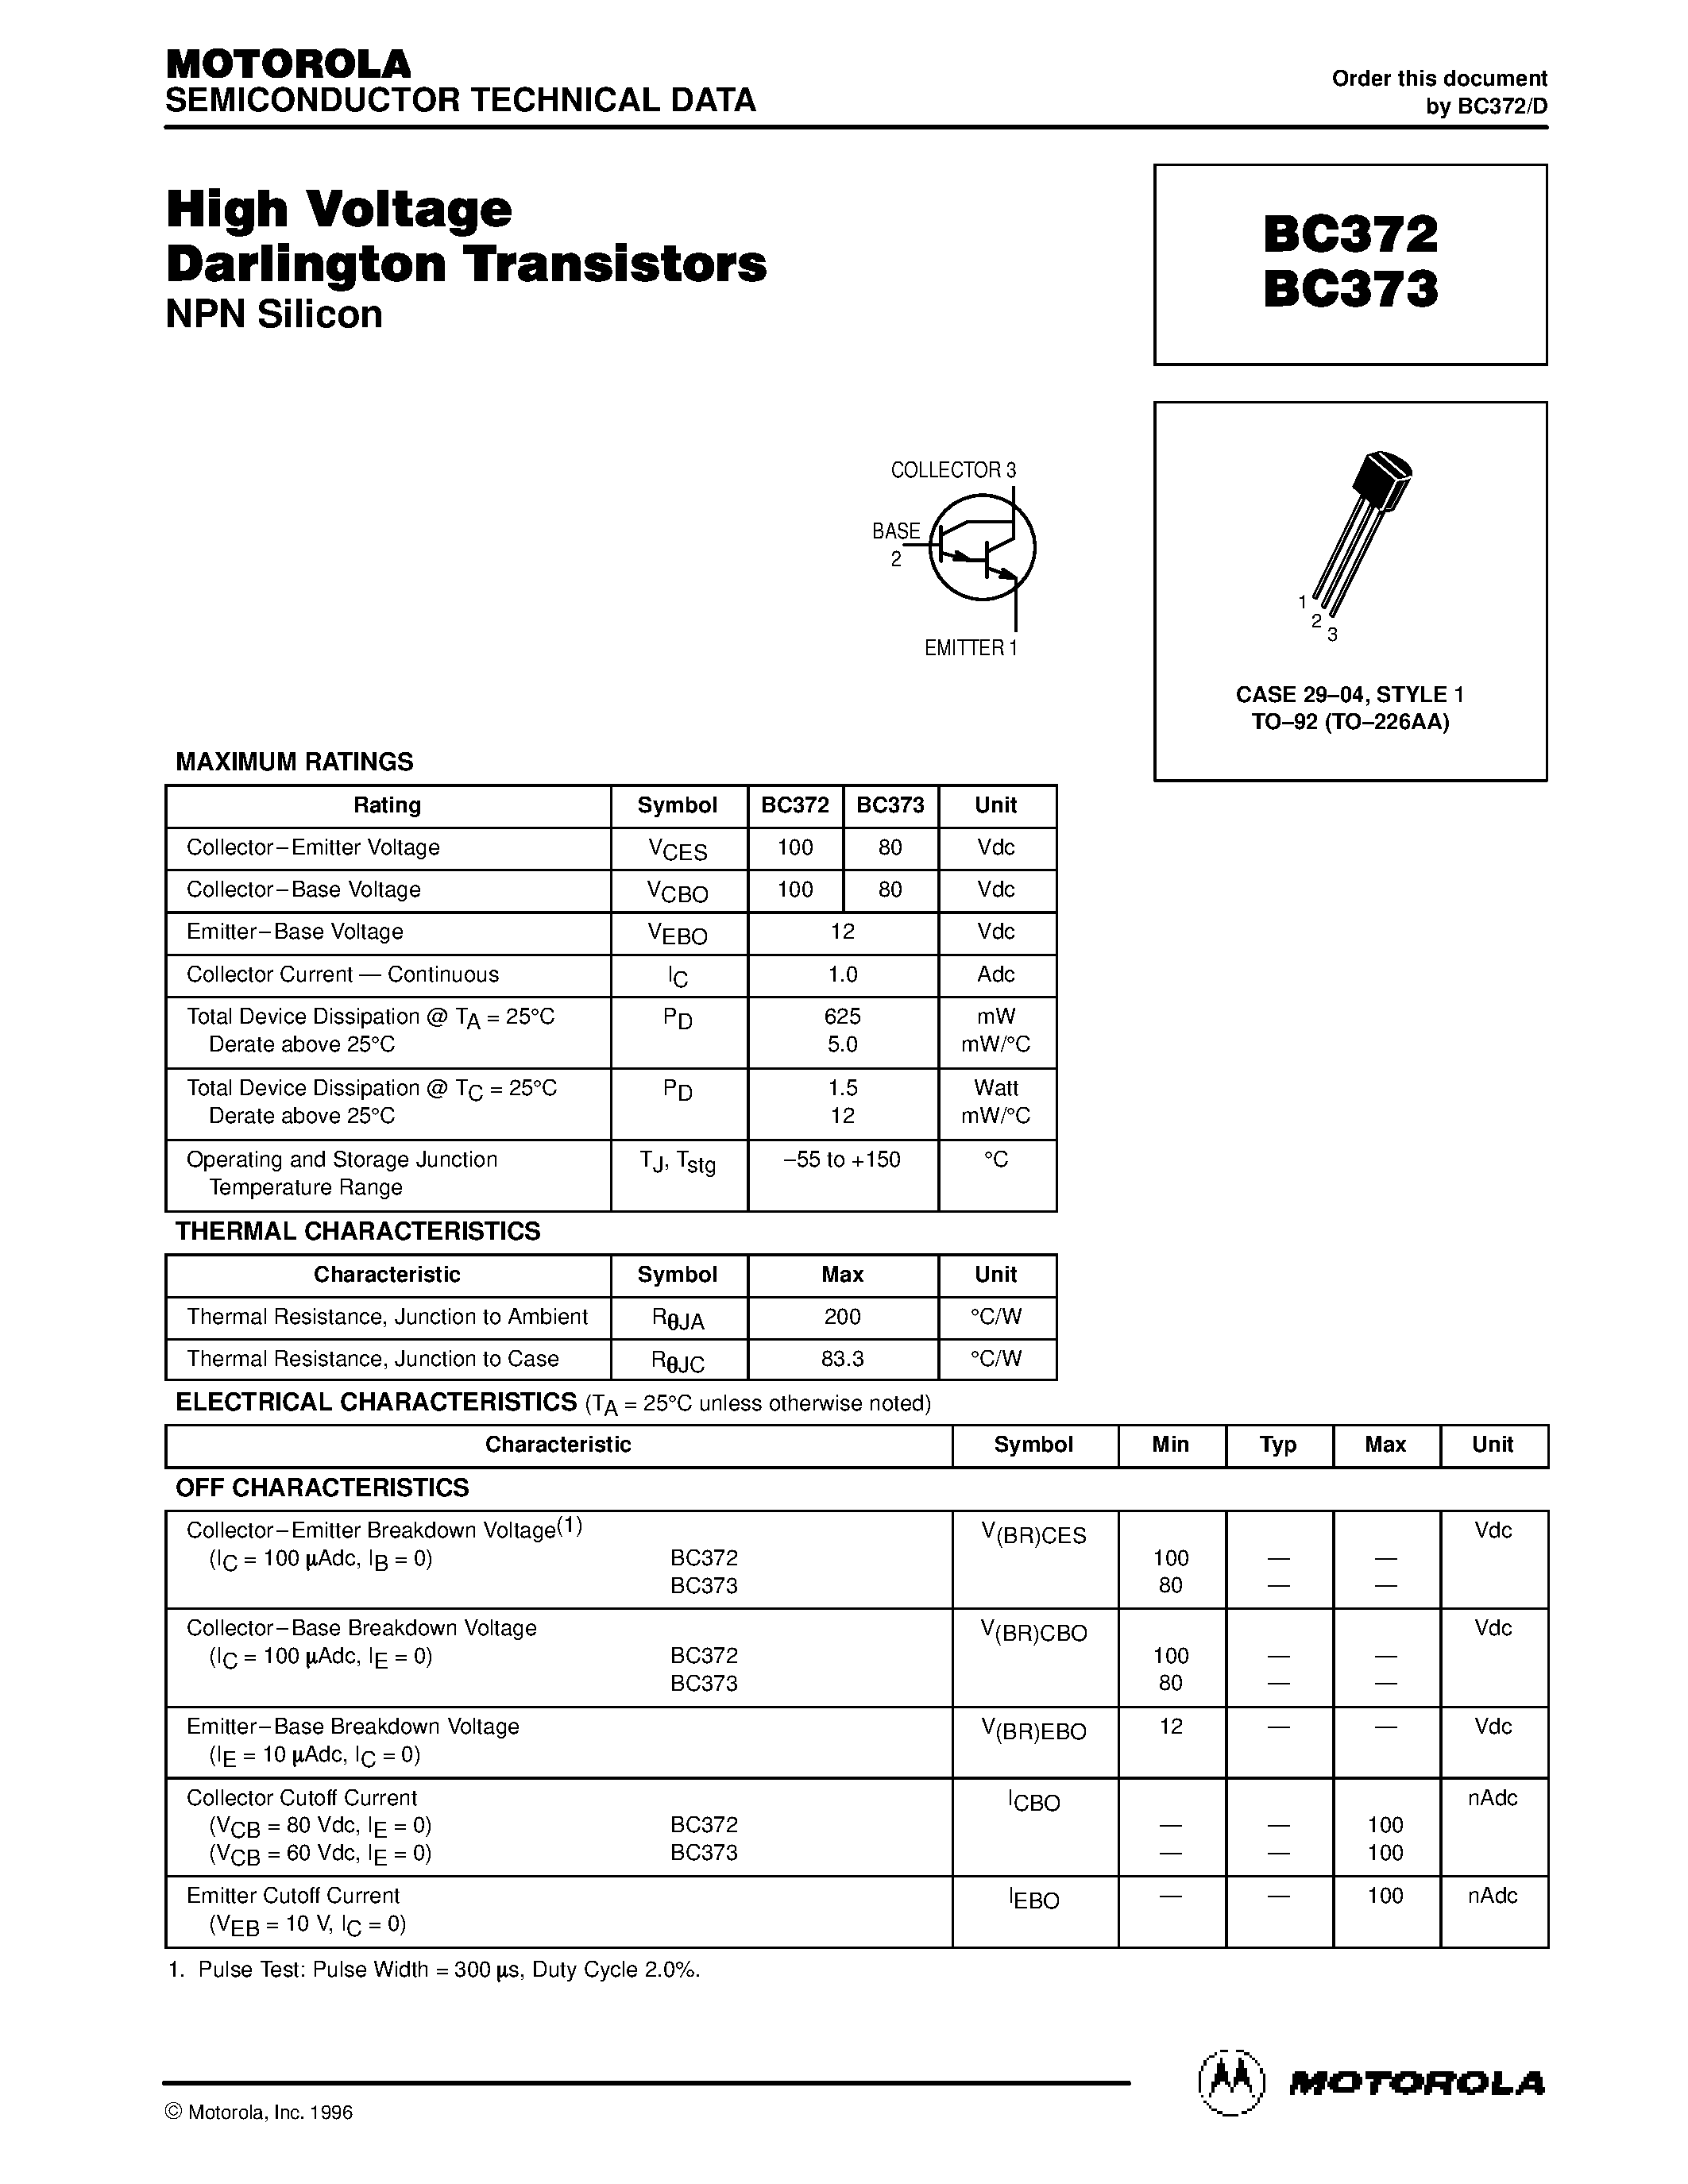 Даташит BC373 - High Voltage Darlington Transistors страница 1